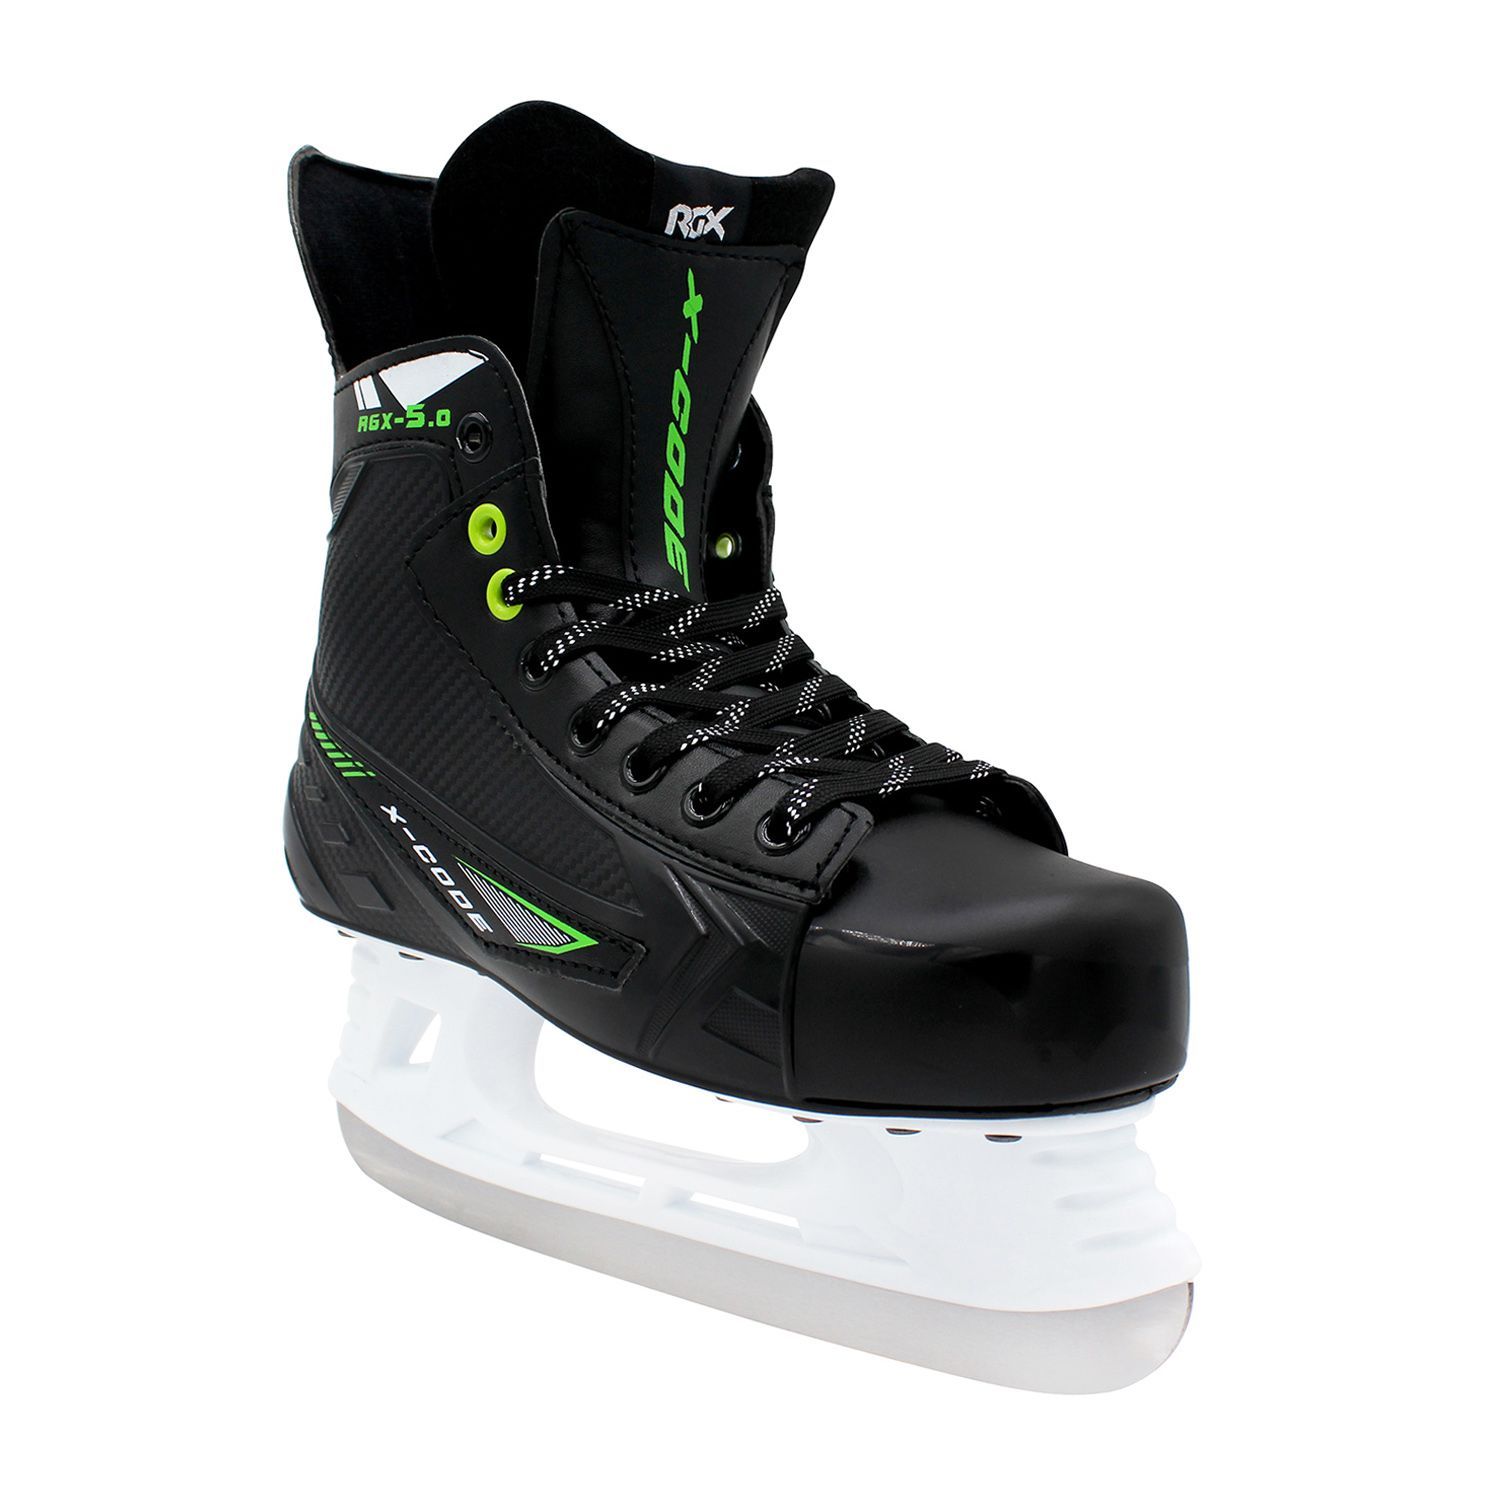 Хоккейные коньки RGX RGX-5.0 X-Code Green 37 - фото 5